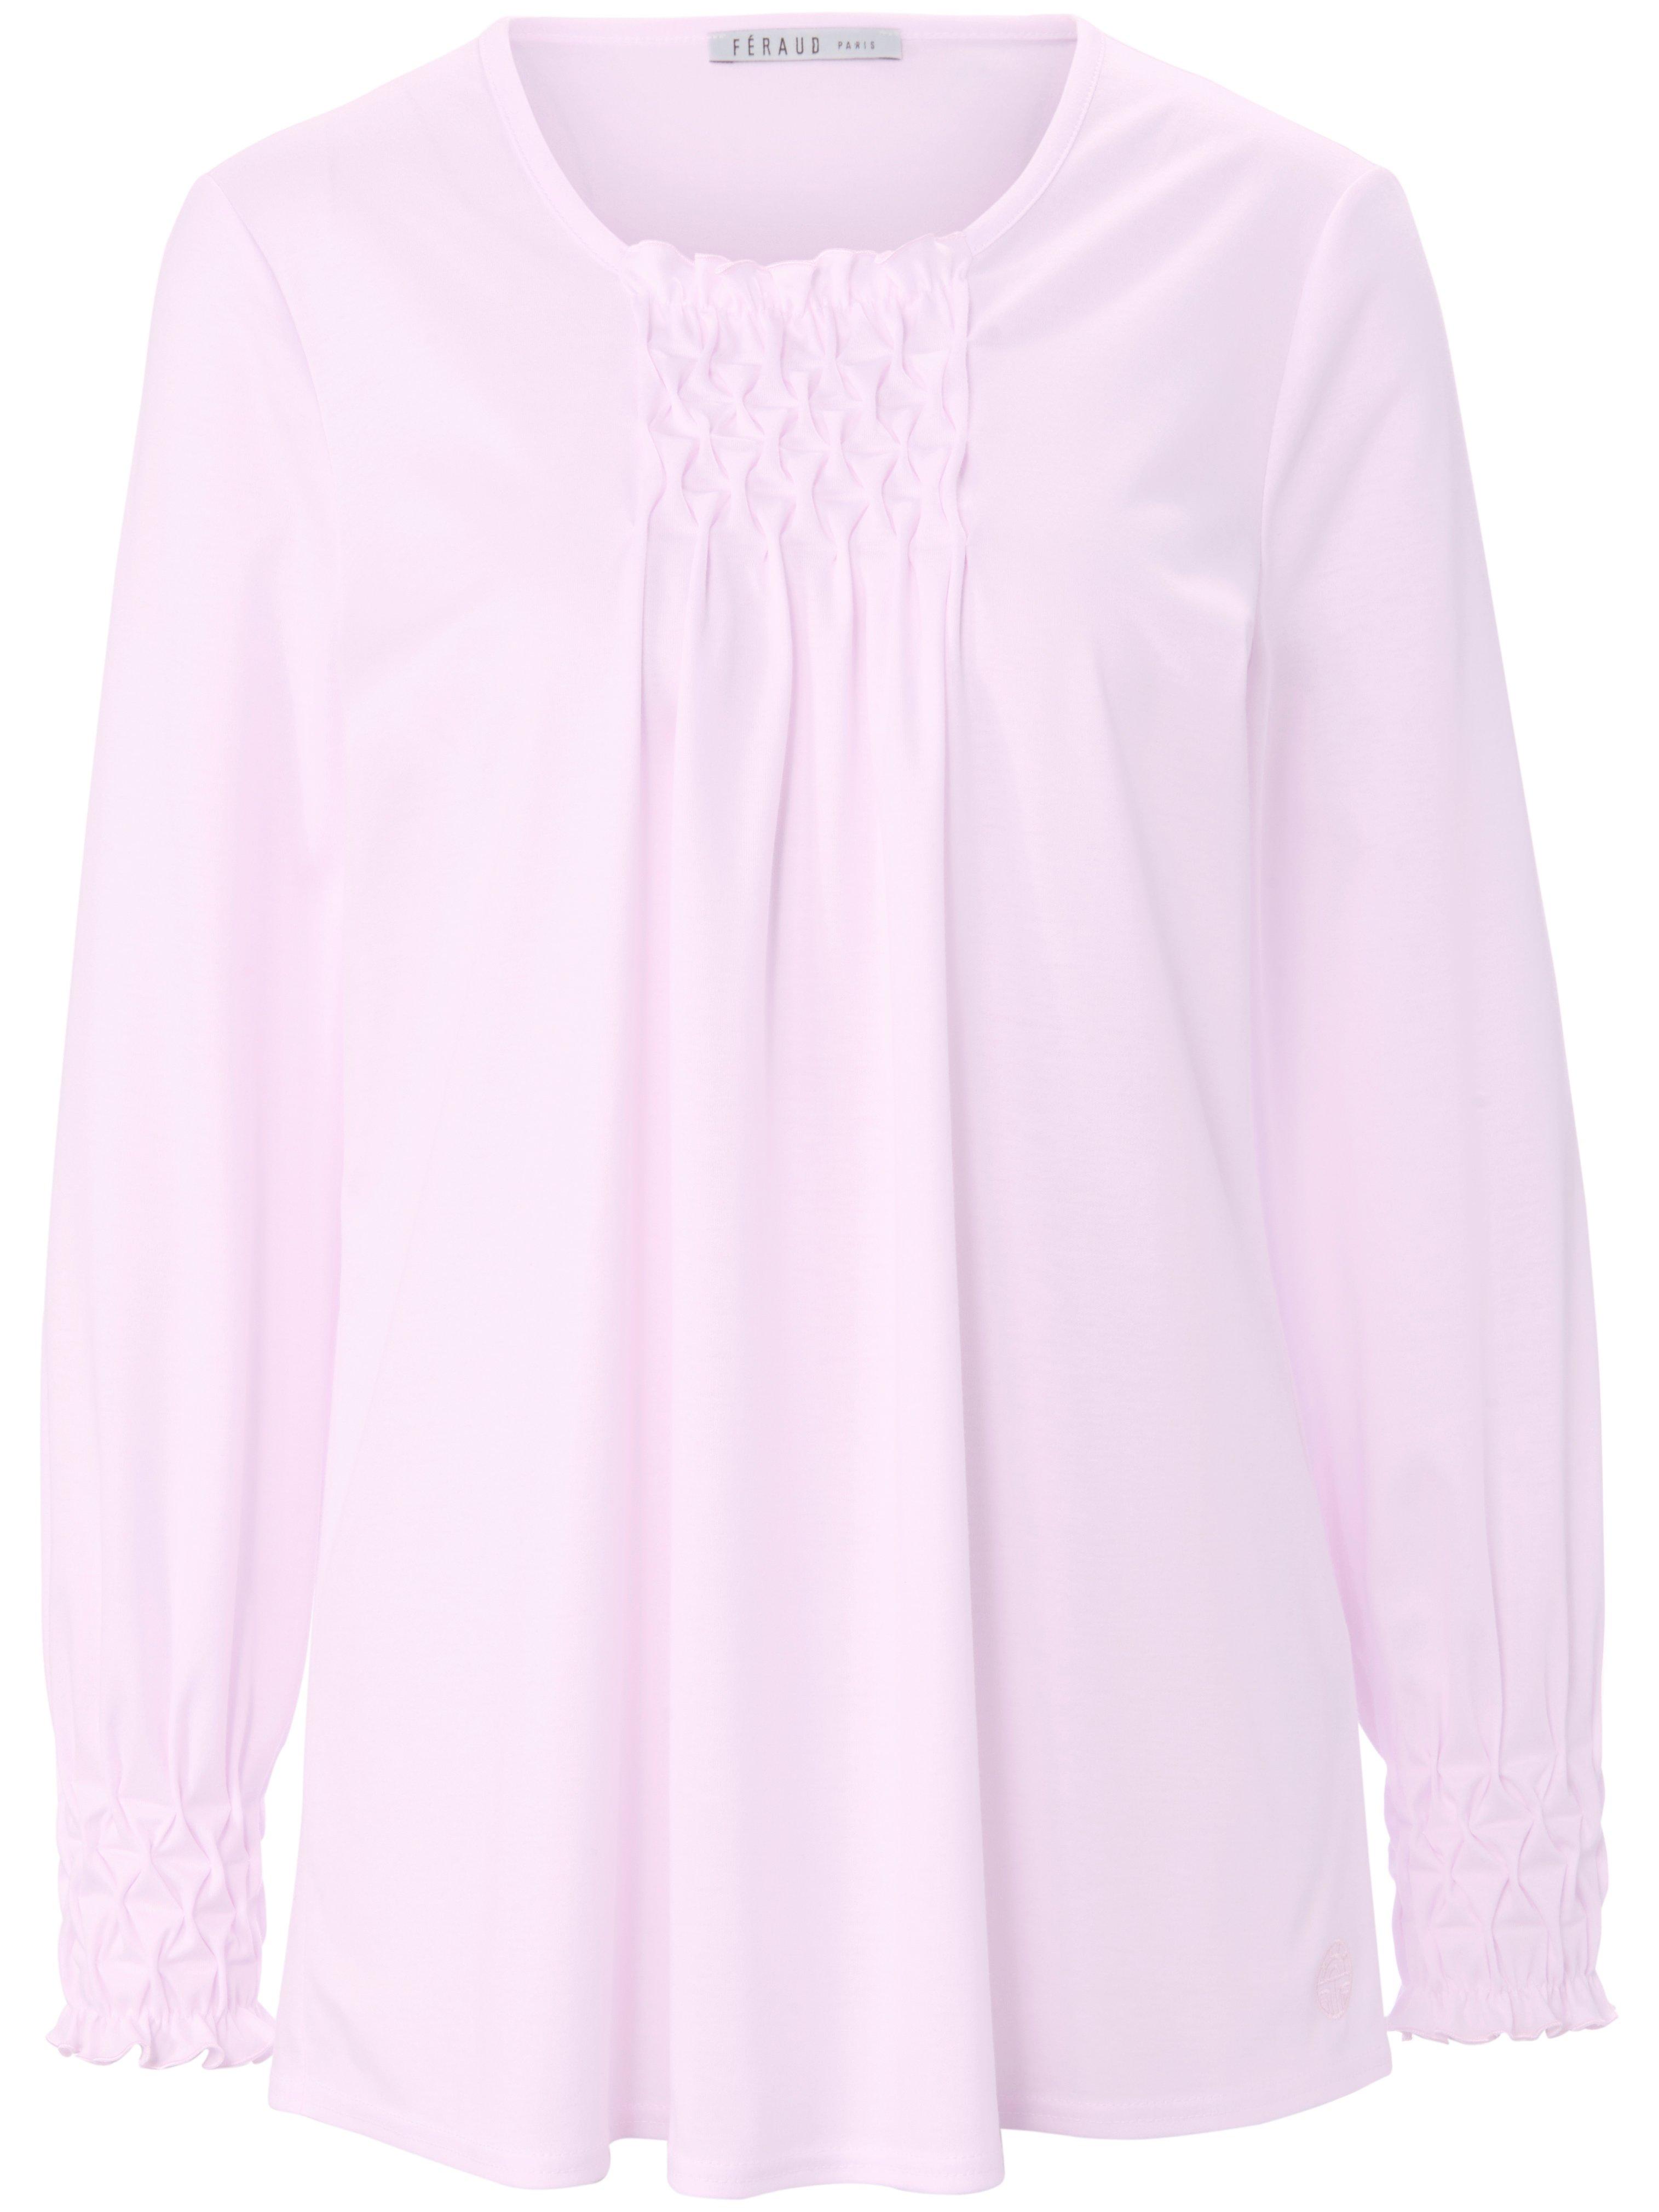 Pyjama 100% katoen lange mouwen Van Féraud roze